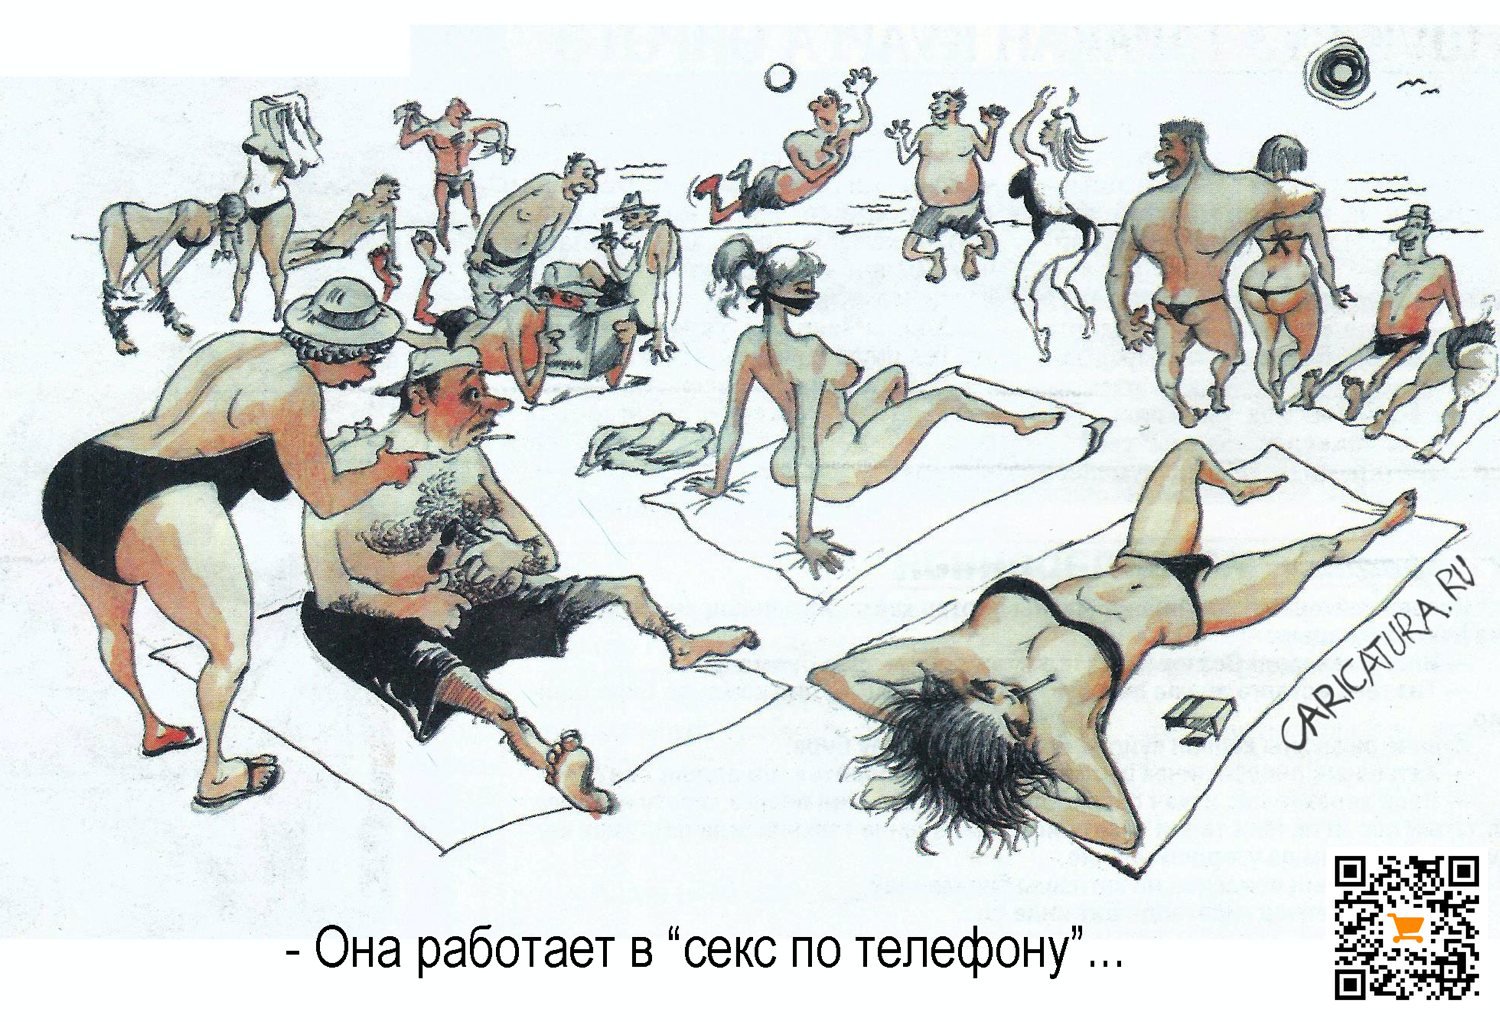 Грязный секс | chelmass.ru — лучшие карикатуры от зарубежных авторов! Новая карикатура каждый день.